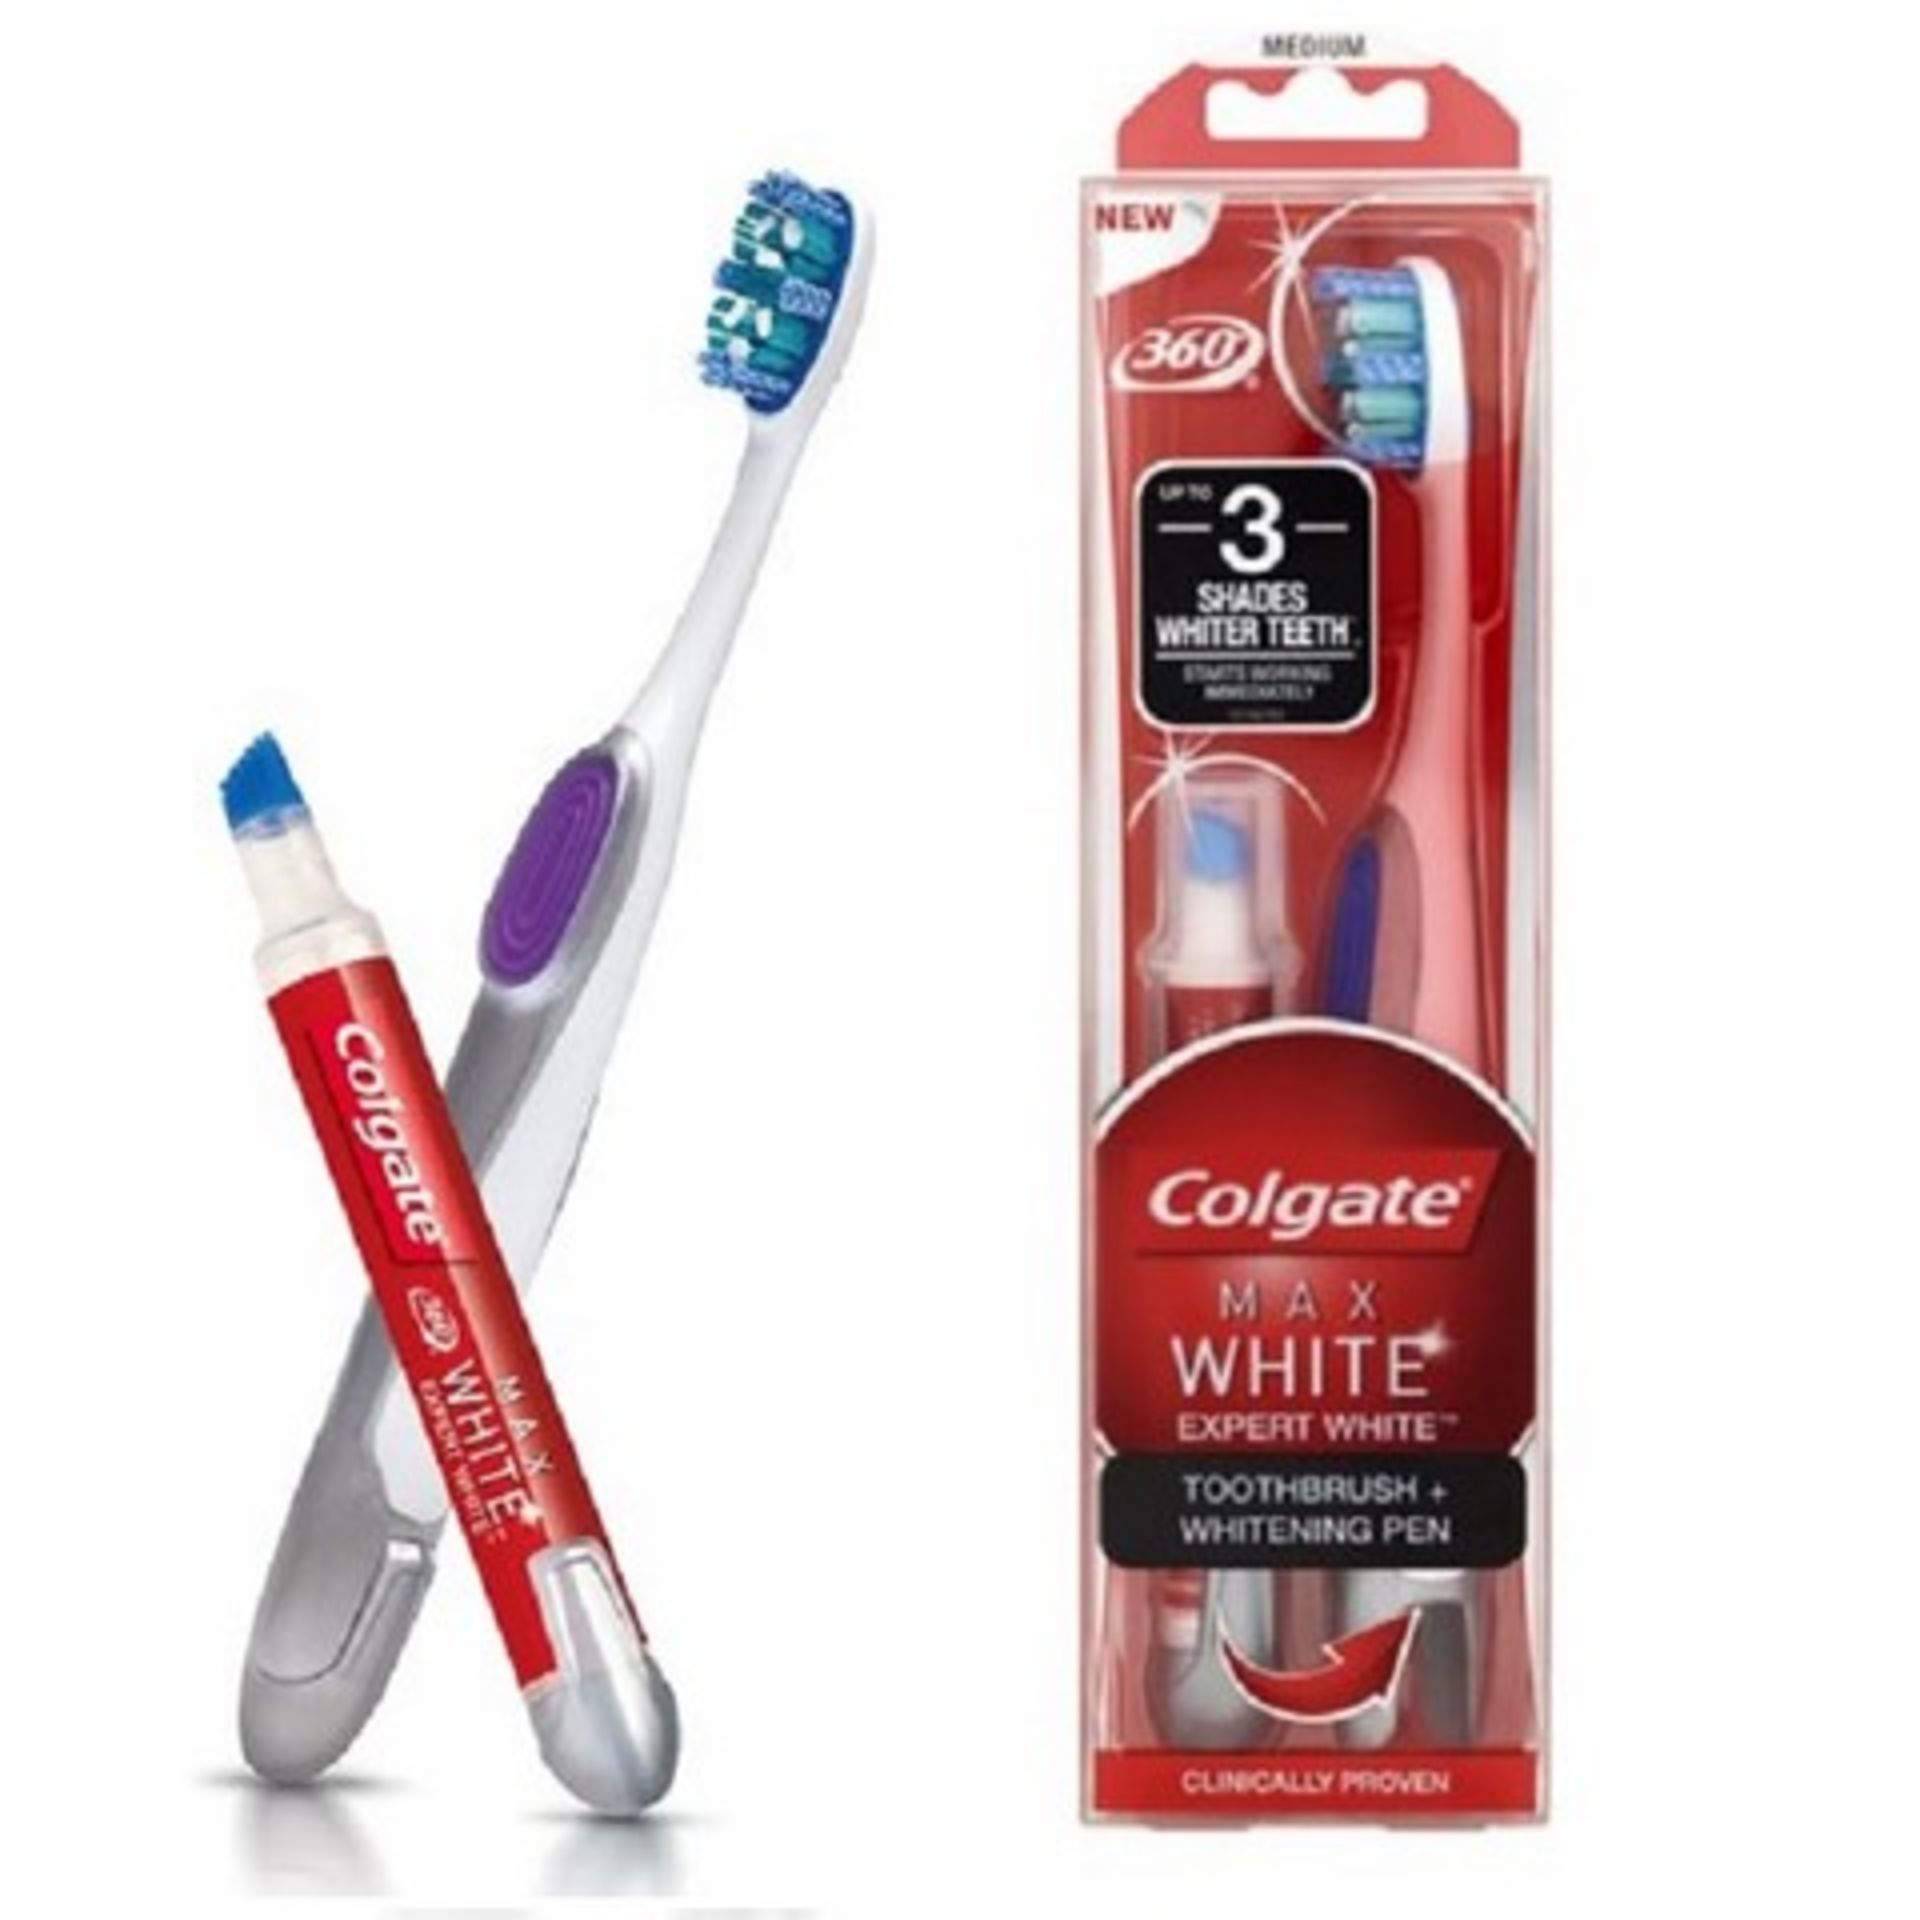 + VAT Brand New Colgate (£12.50 Supermarket Price) Max White Expert White Toothbrush and Whitening